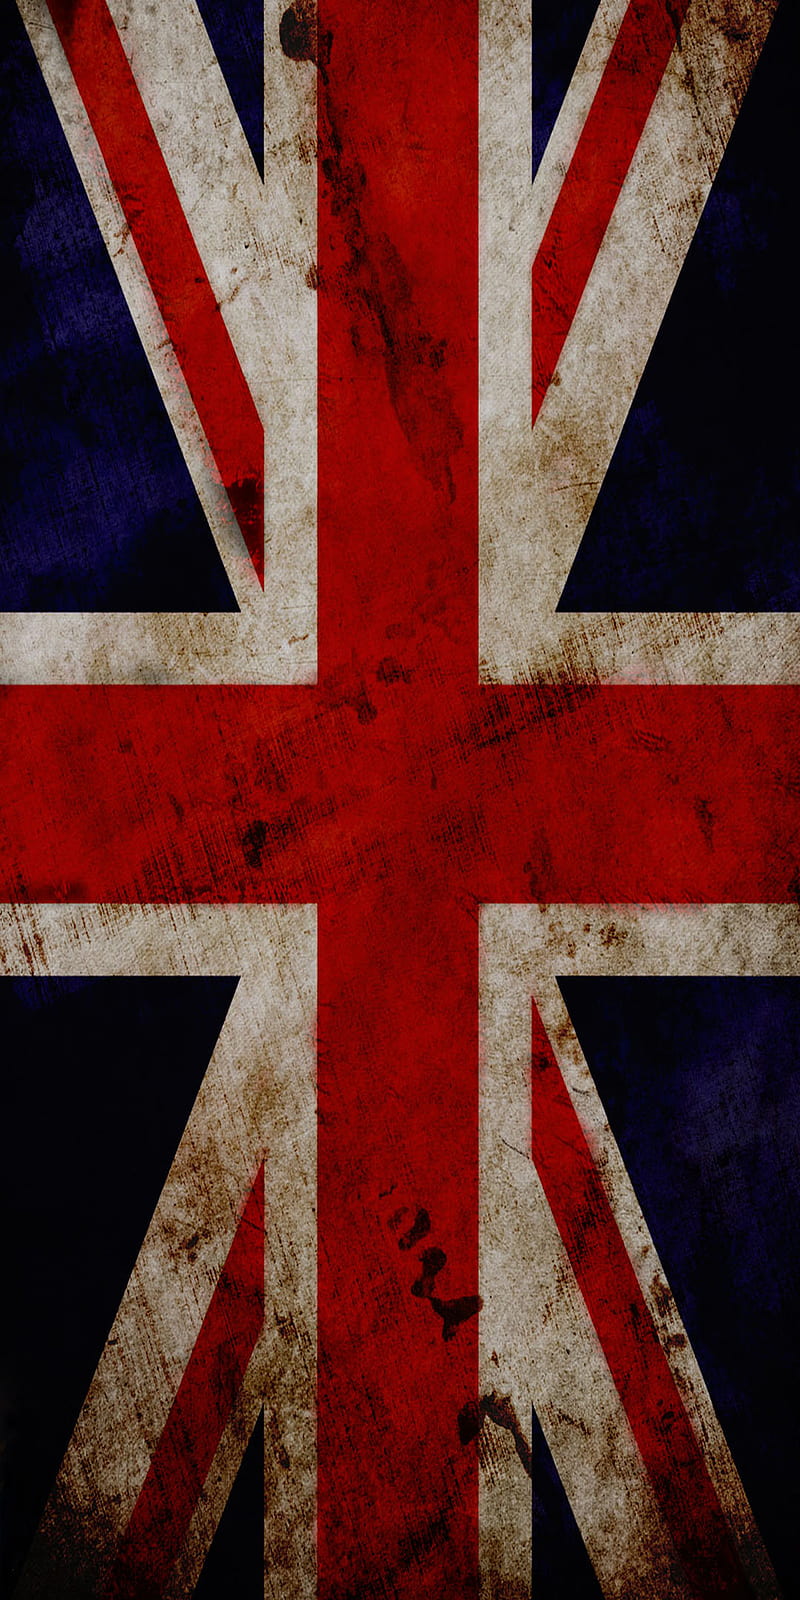 UK Grunge: Với phong cách UK Grunge độc đáo, bạn sẽ được trải nghiệm một không gian năng động, hiện đại và đầy sáng tạo. Với những tông màu pha trộn giữa màu đen, trắng, cam, xanh dương, đỏ và hồng, hứa hẹn sẽ mang đến cho bạn những cảm xúc tuyệt vời trong từng khoảng không.